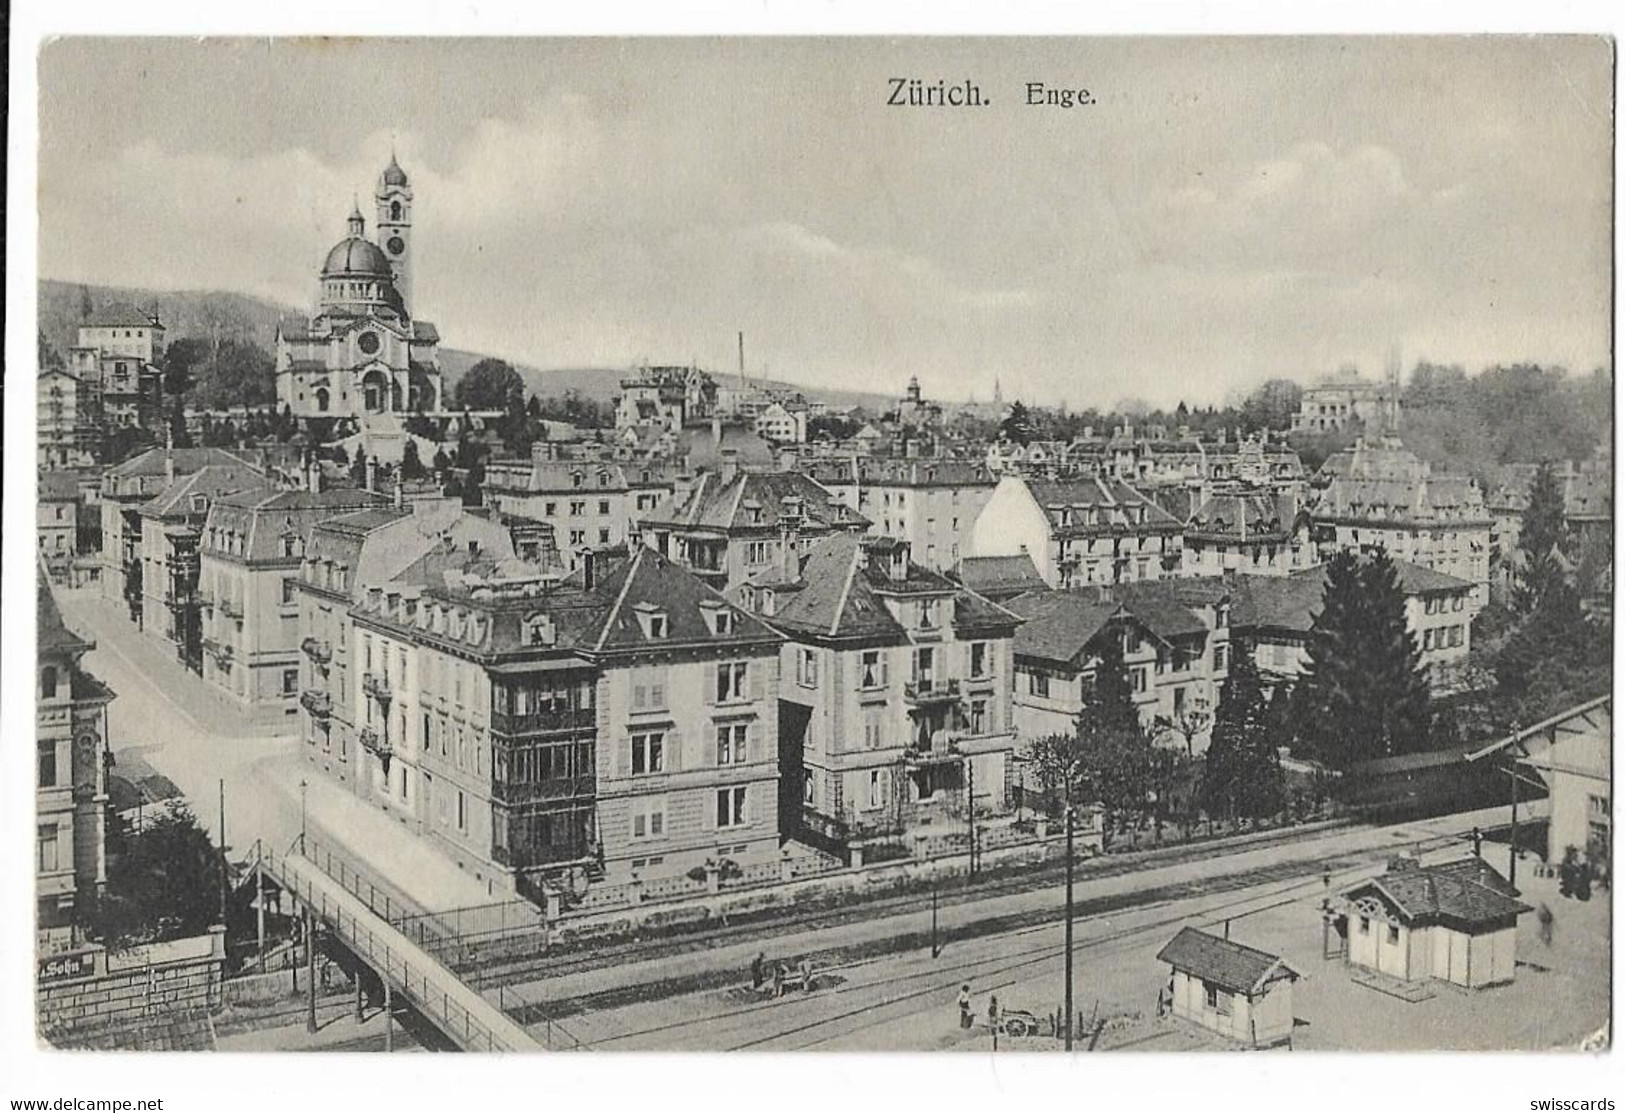 ZÜRICH ENGE: Bahnhofquartier 1908 - Enge